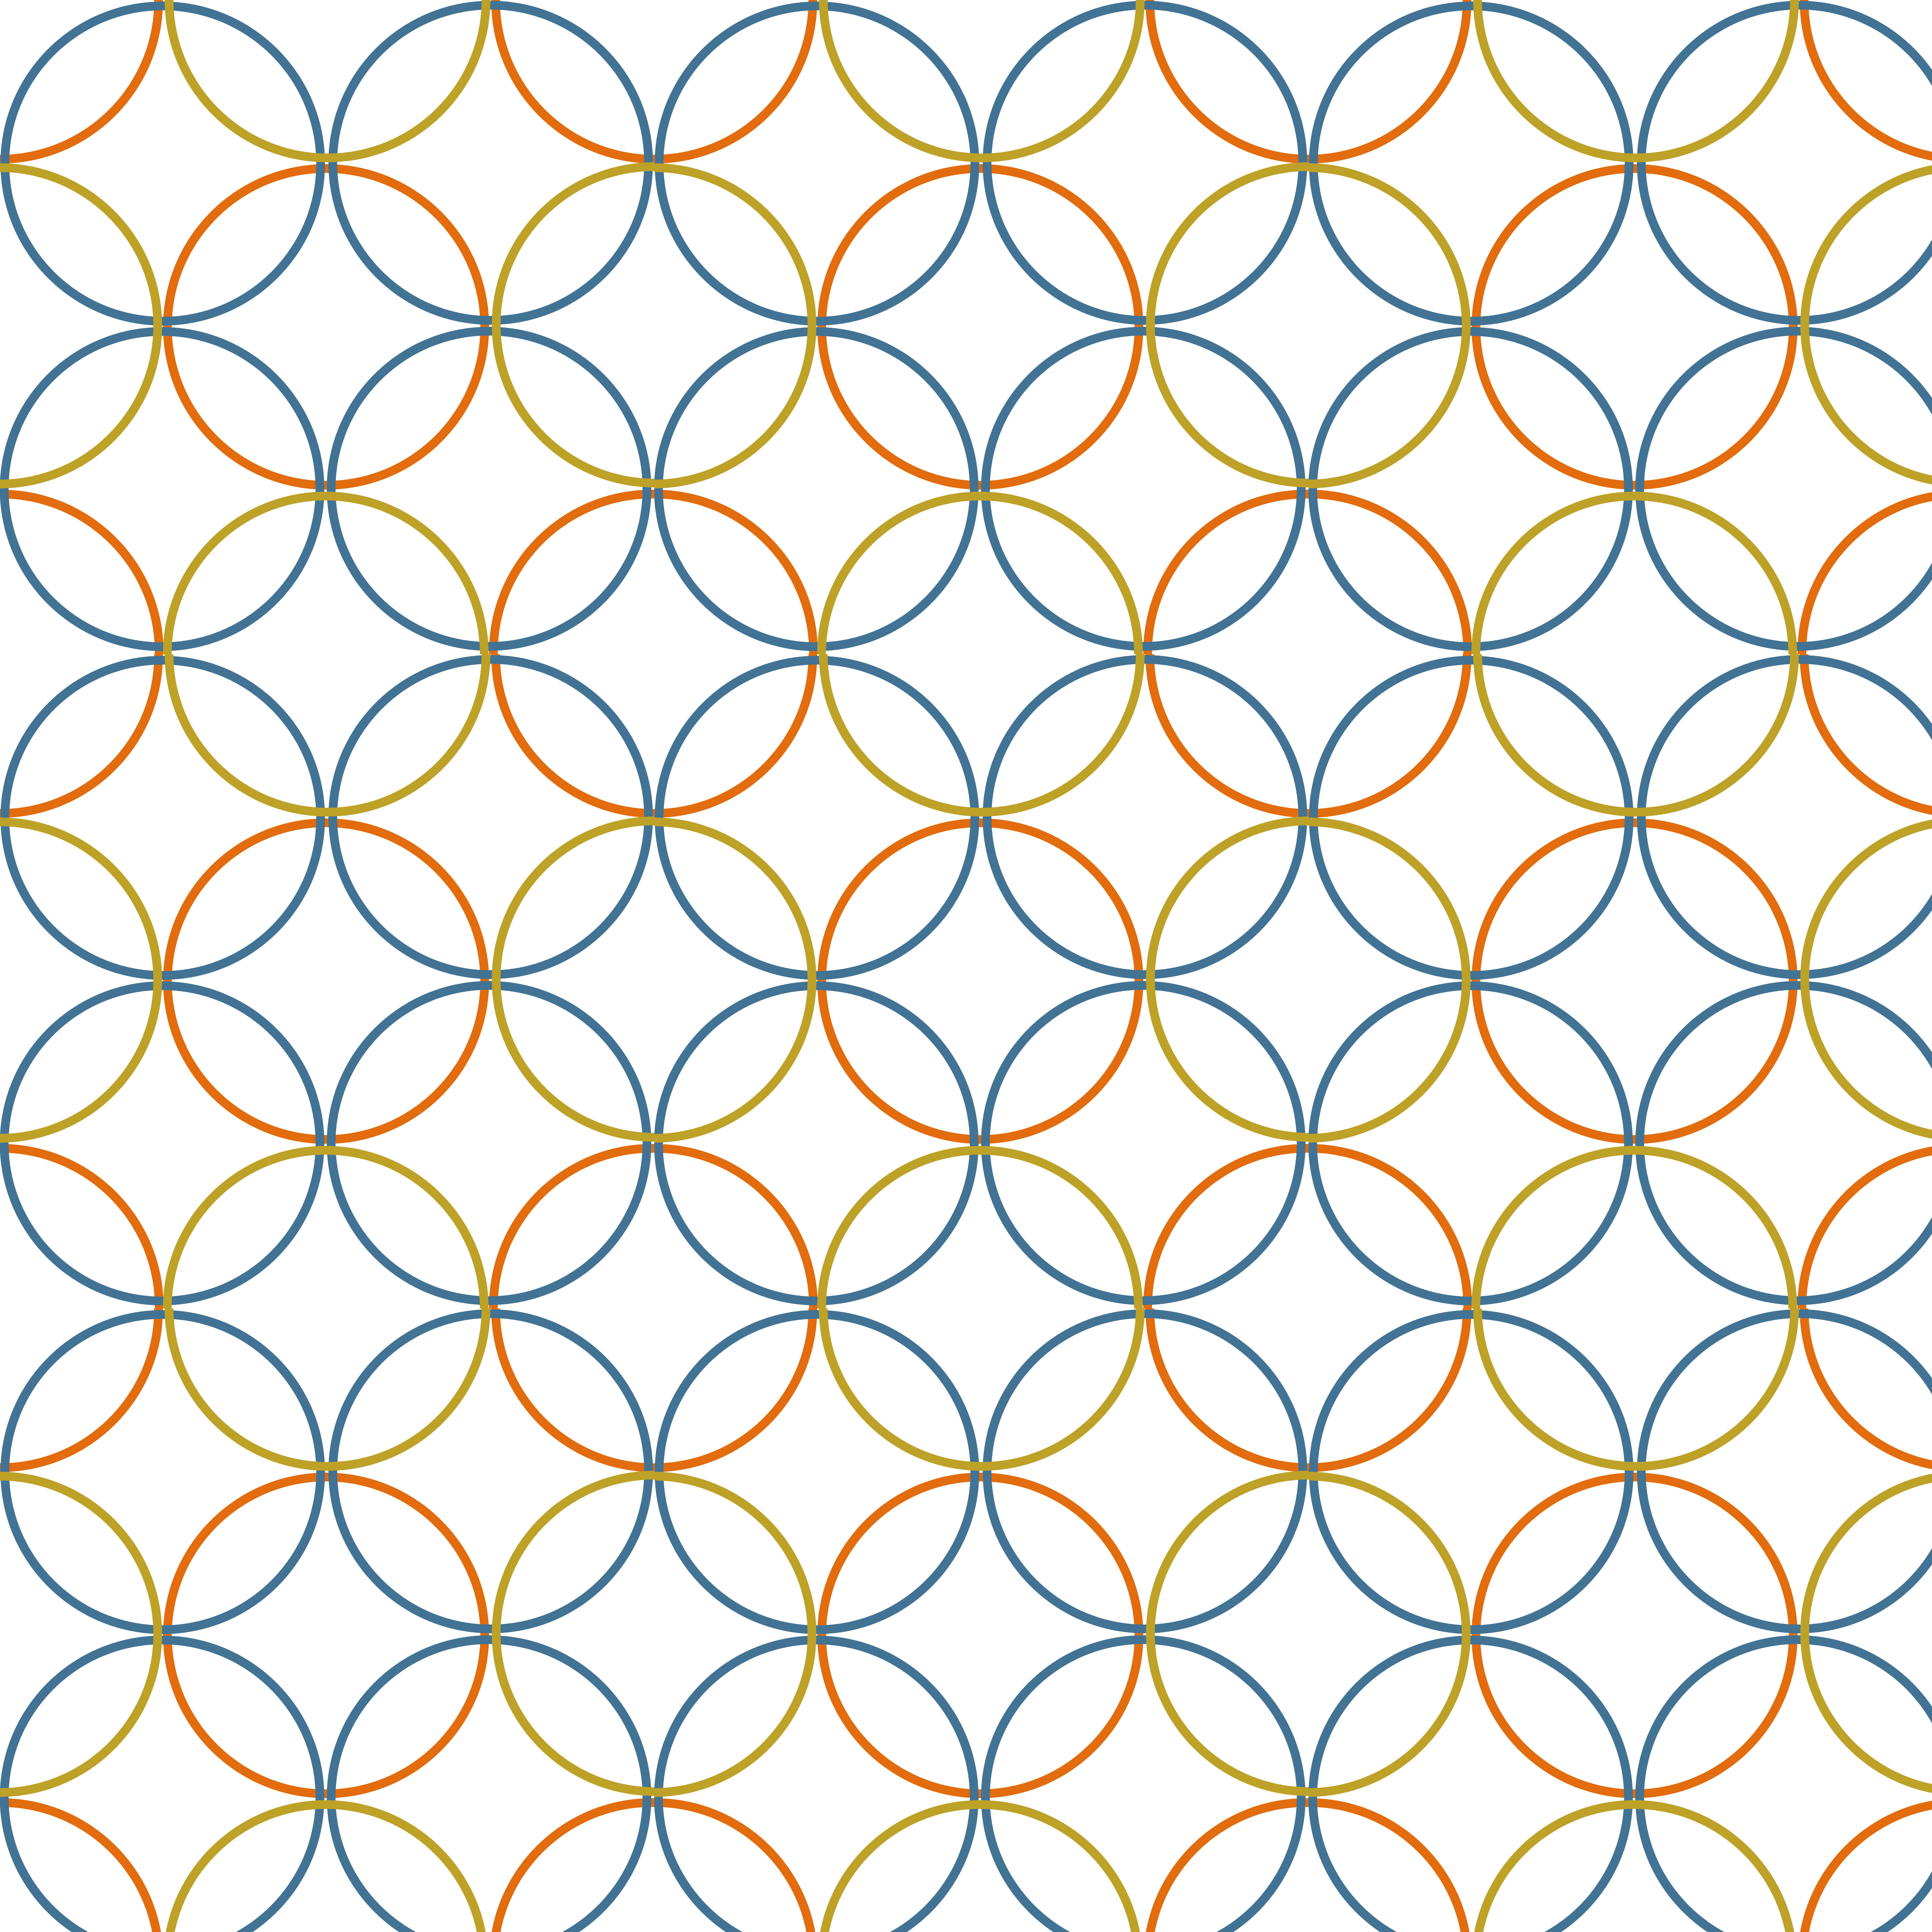 Pattern 0 9 10. Amperage pattern.